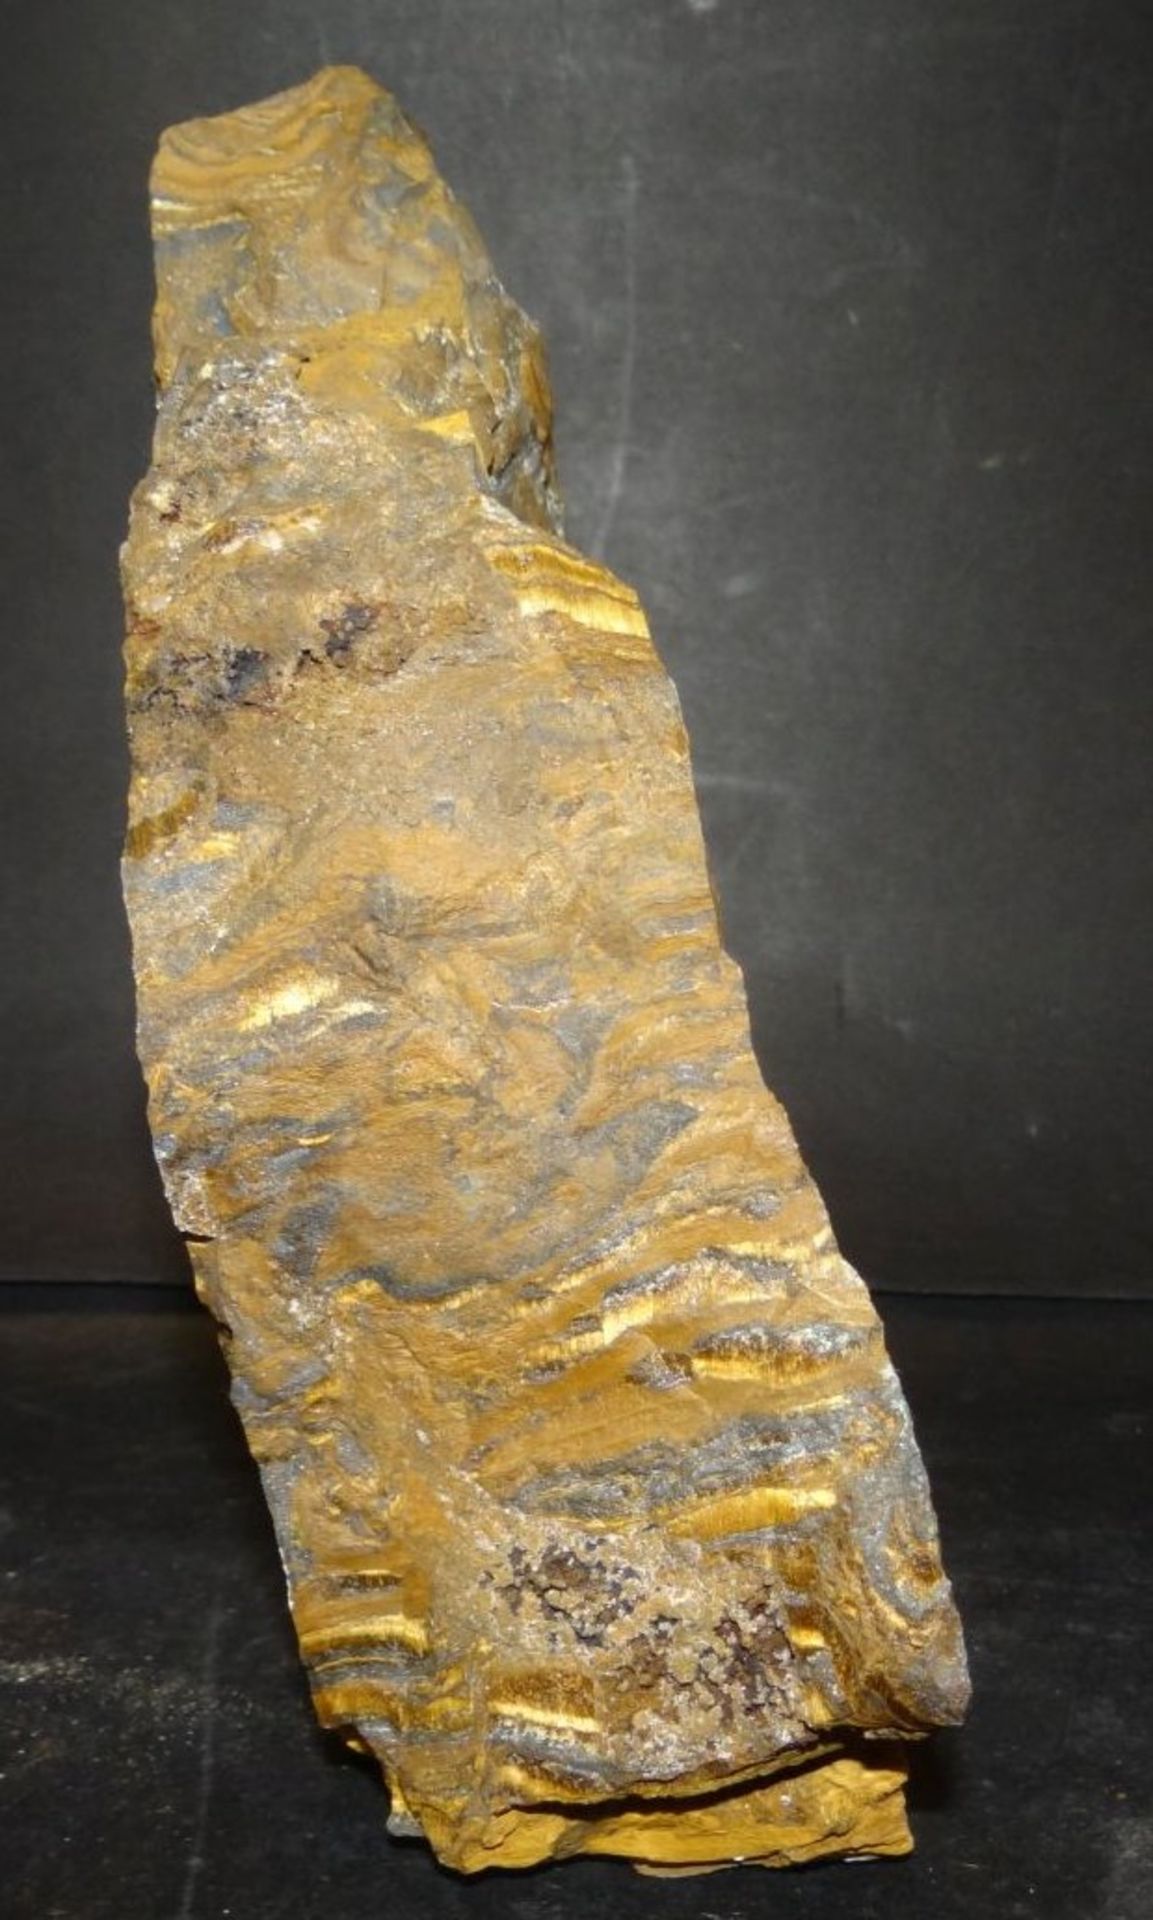 grosses Stück Mineral?, 19x13 cm, 2,5 k- - -22.61 % buyer's premium on the hammer priceVAT margin - Bild 3 aus 3